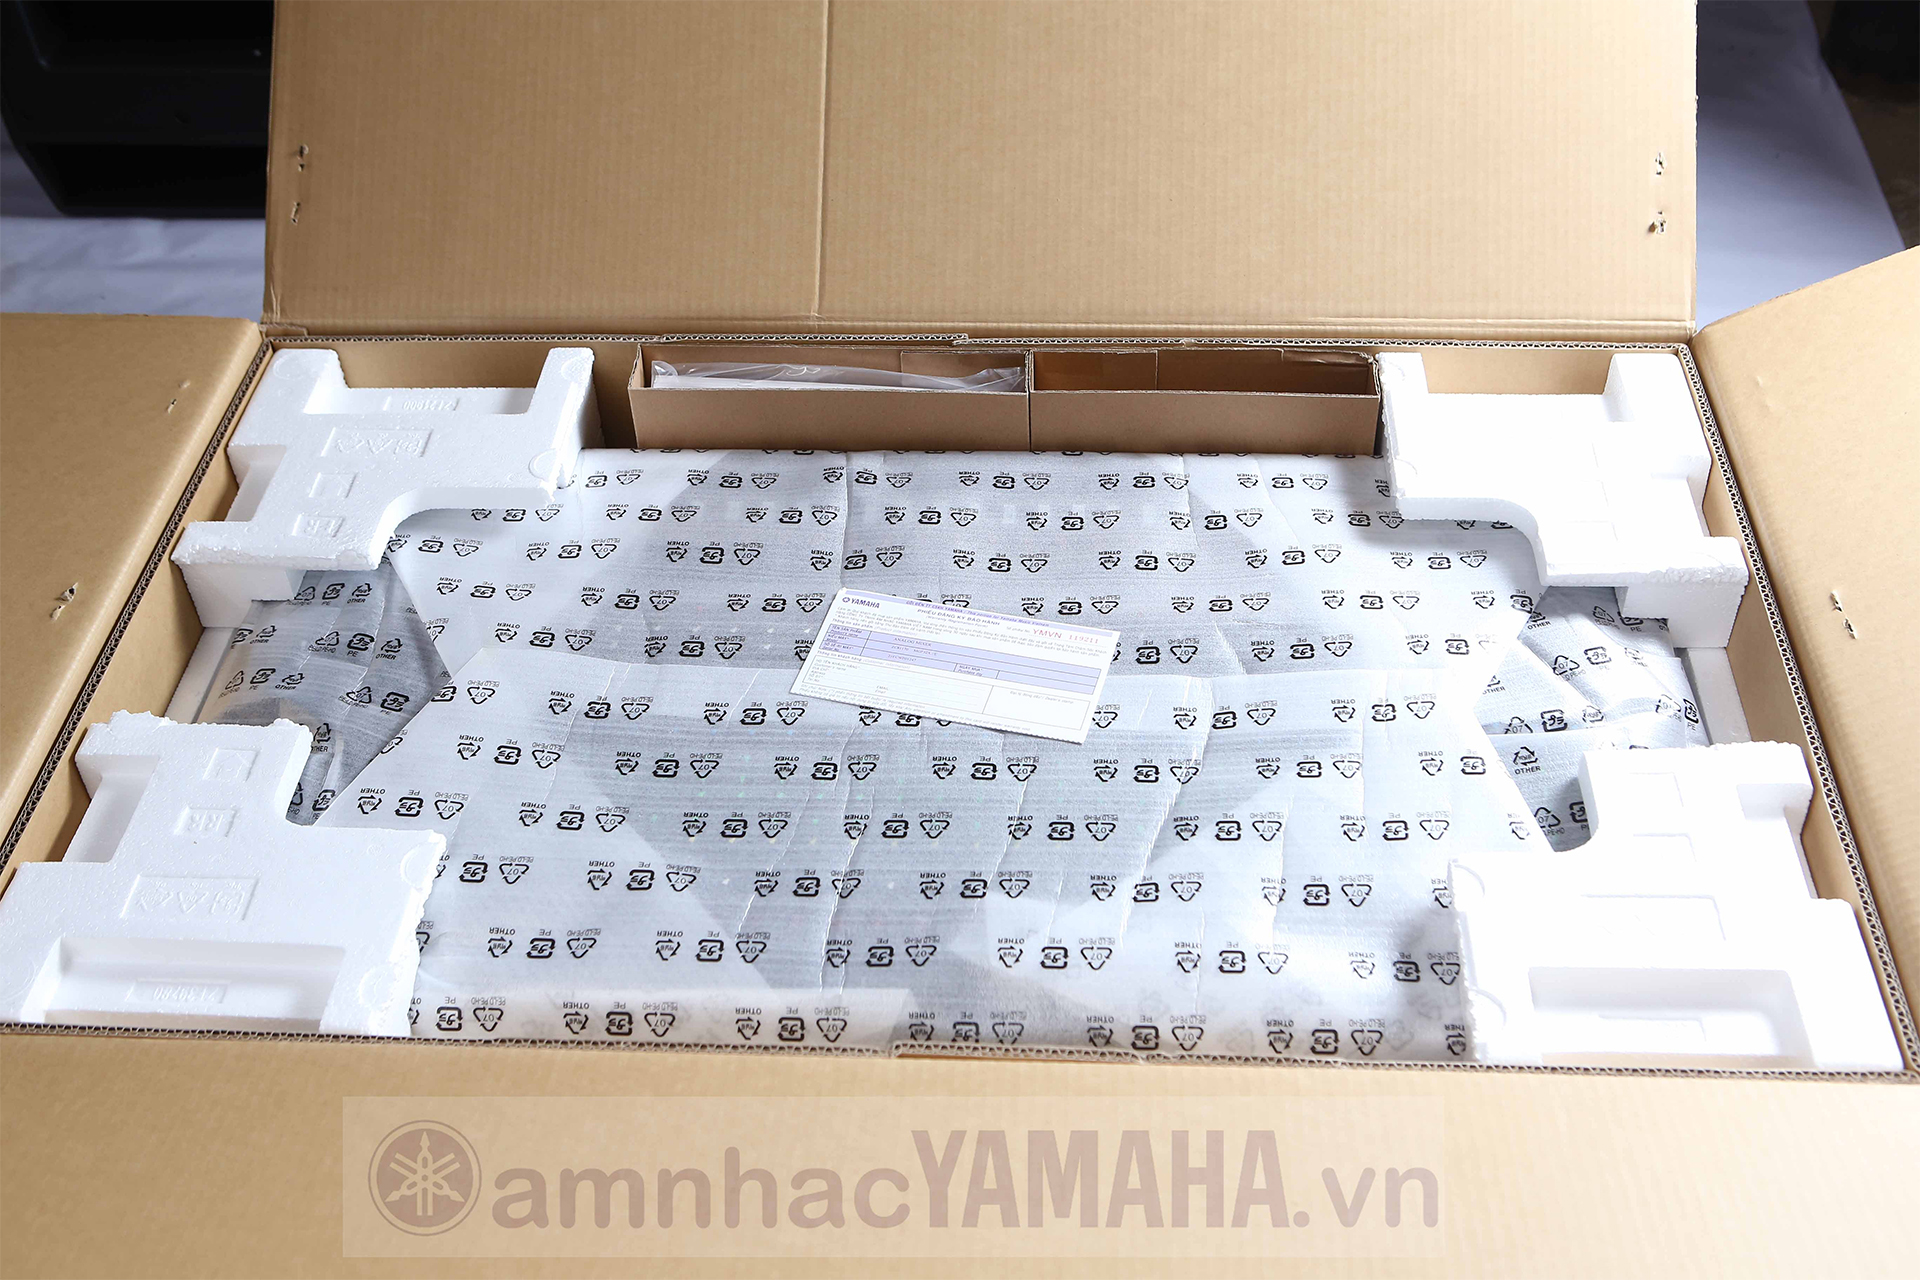 Giới thiệu sản phẩm yamaha mgp32x